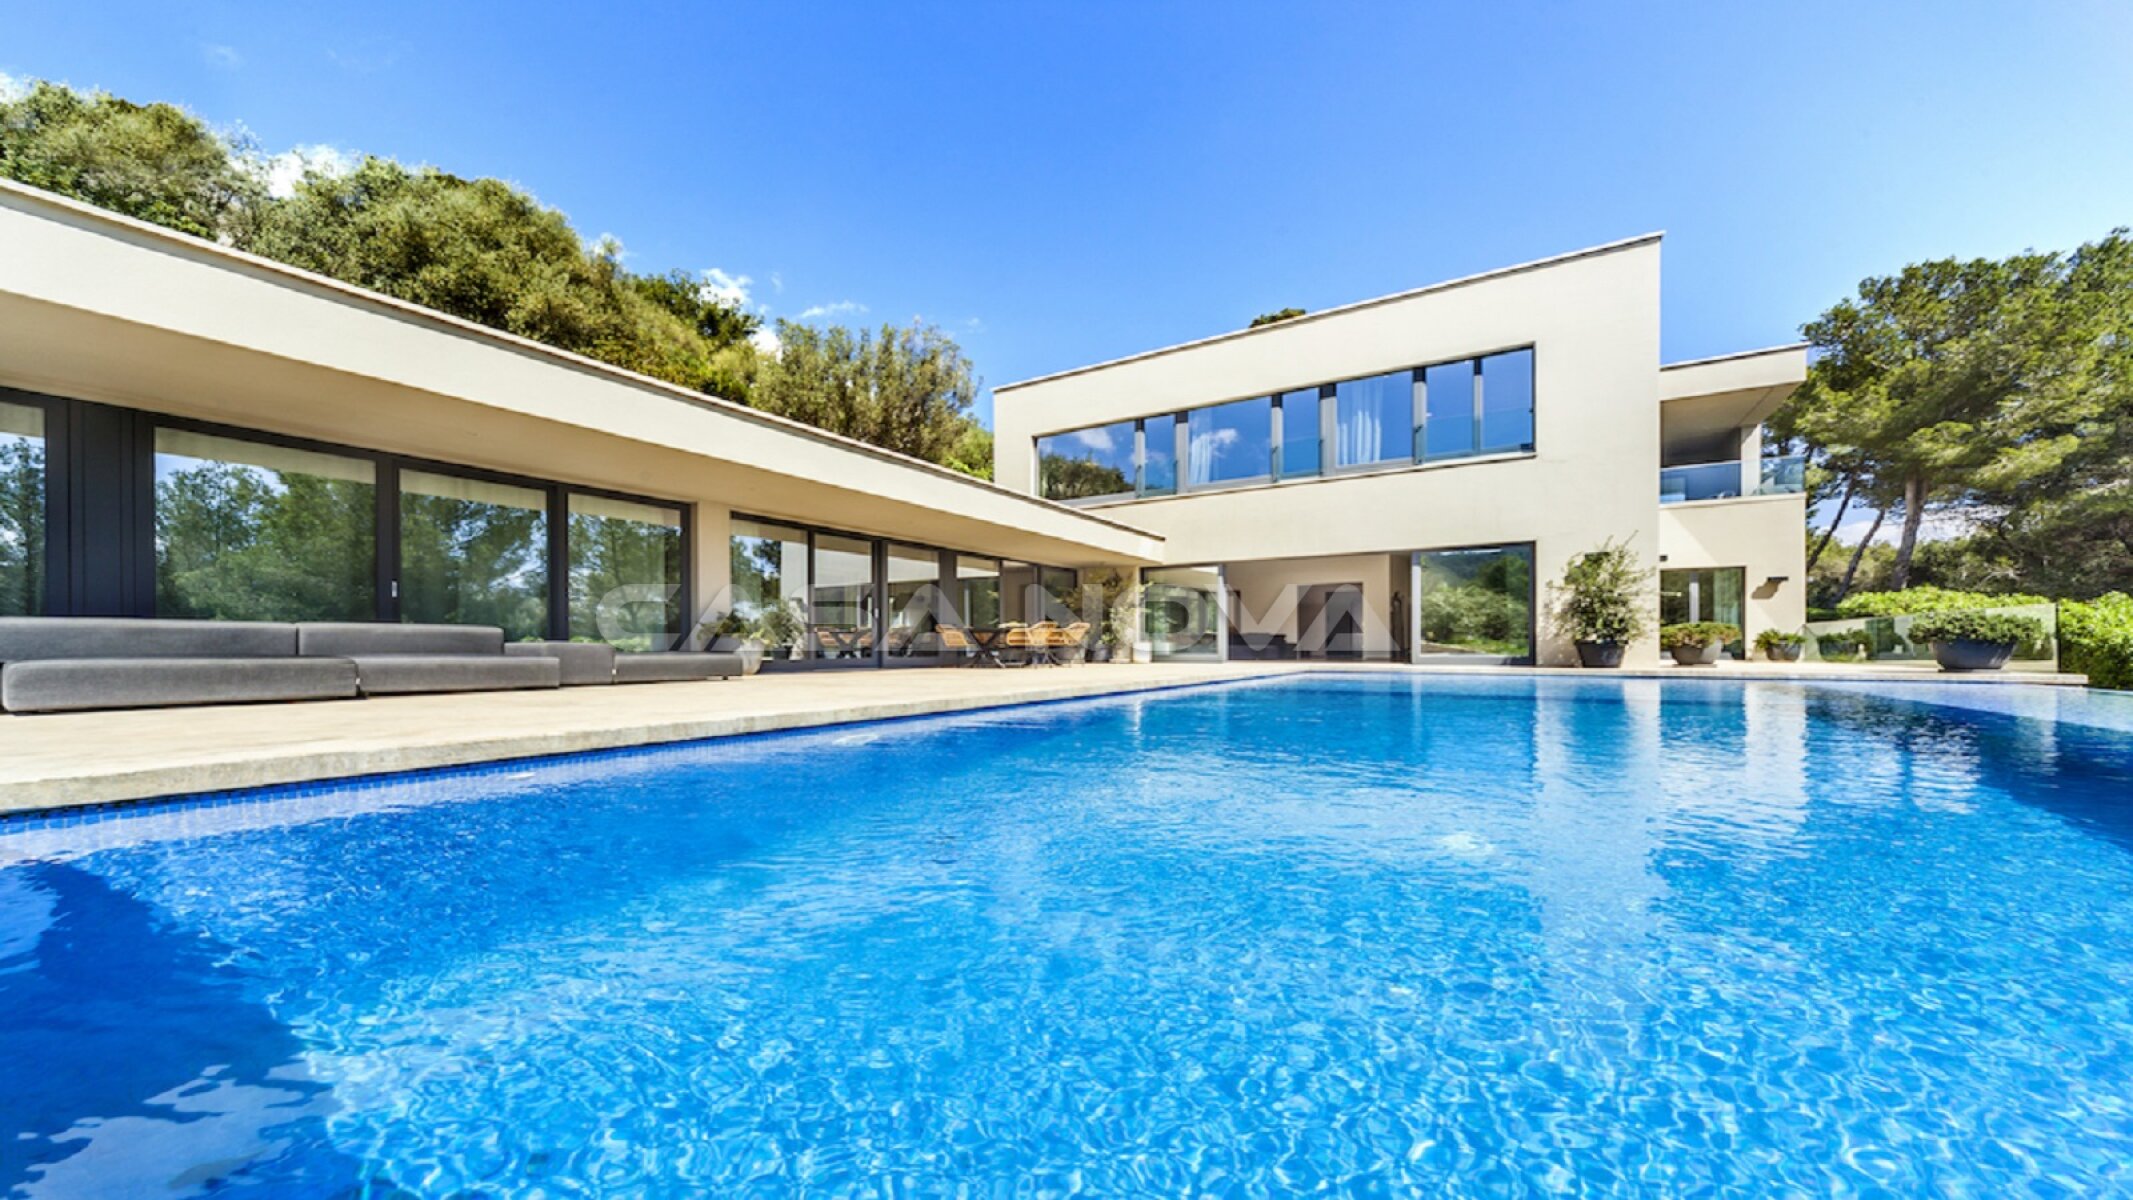 Villa moderna en Mallorca con vista panor�mica del paisaje